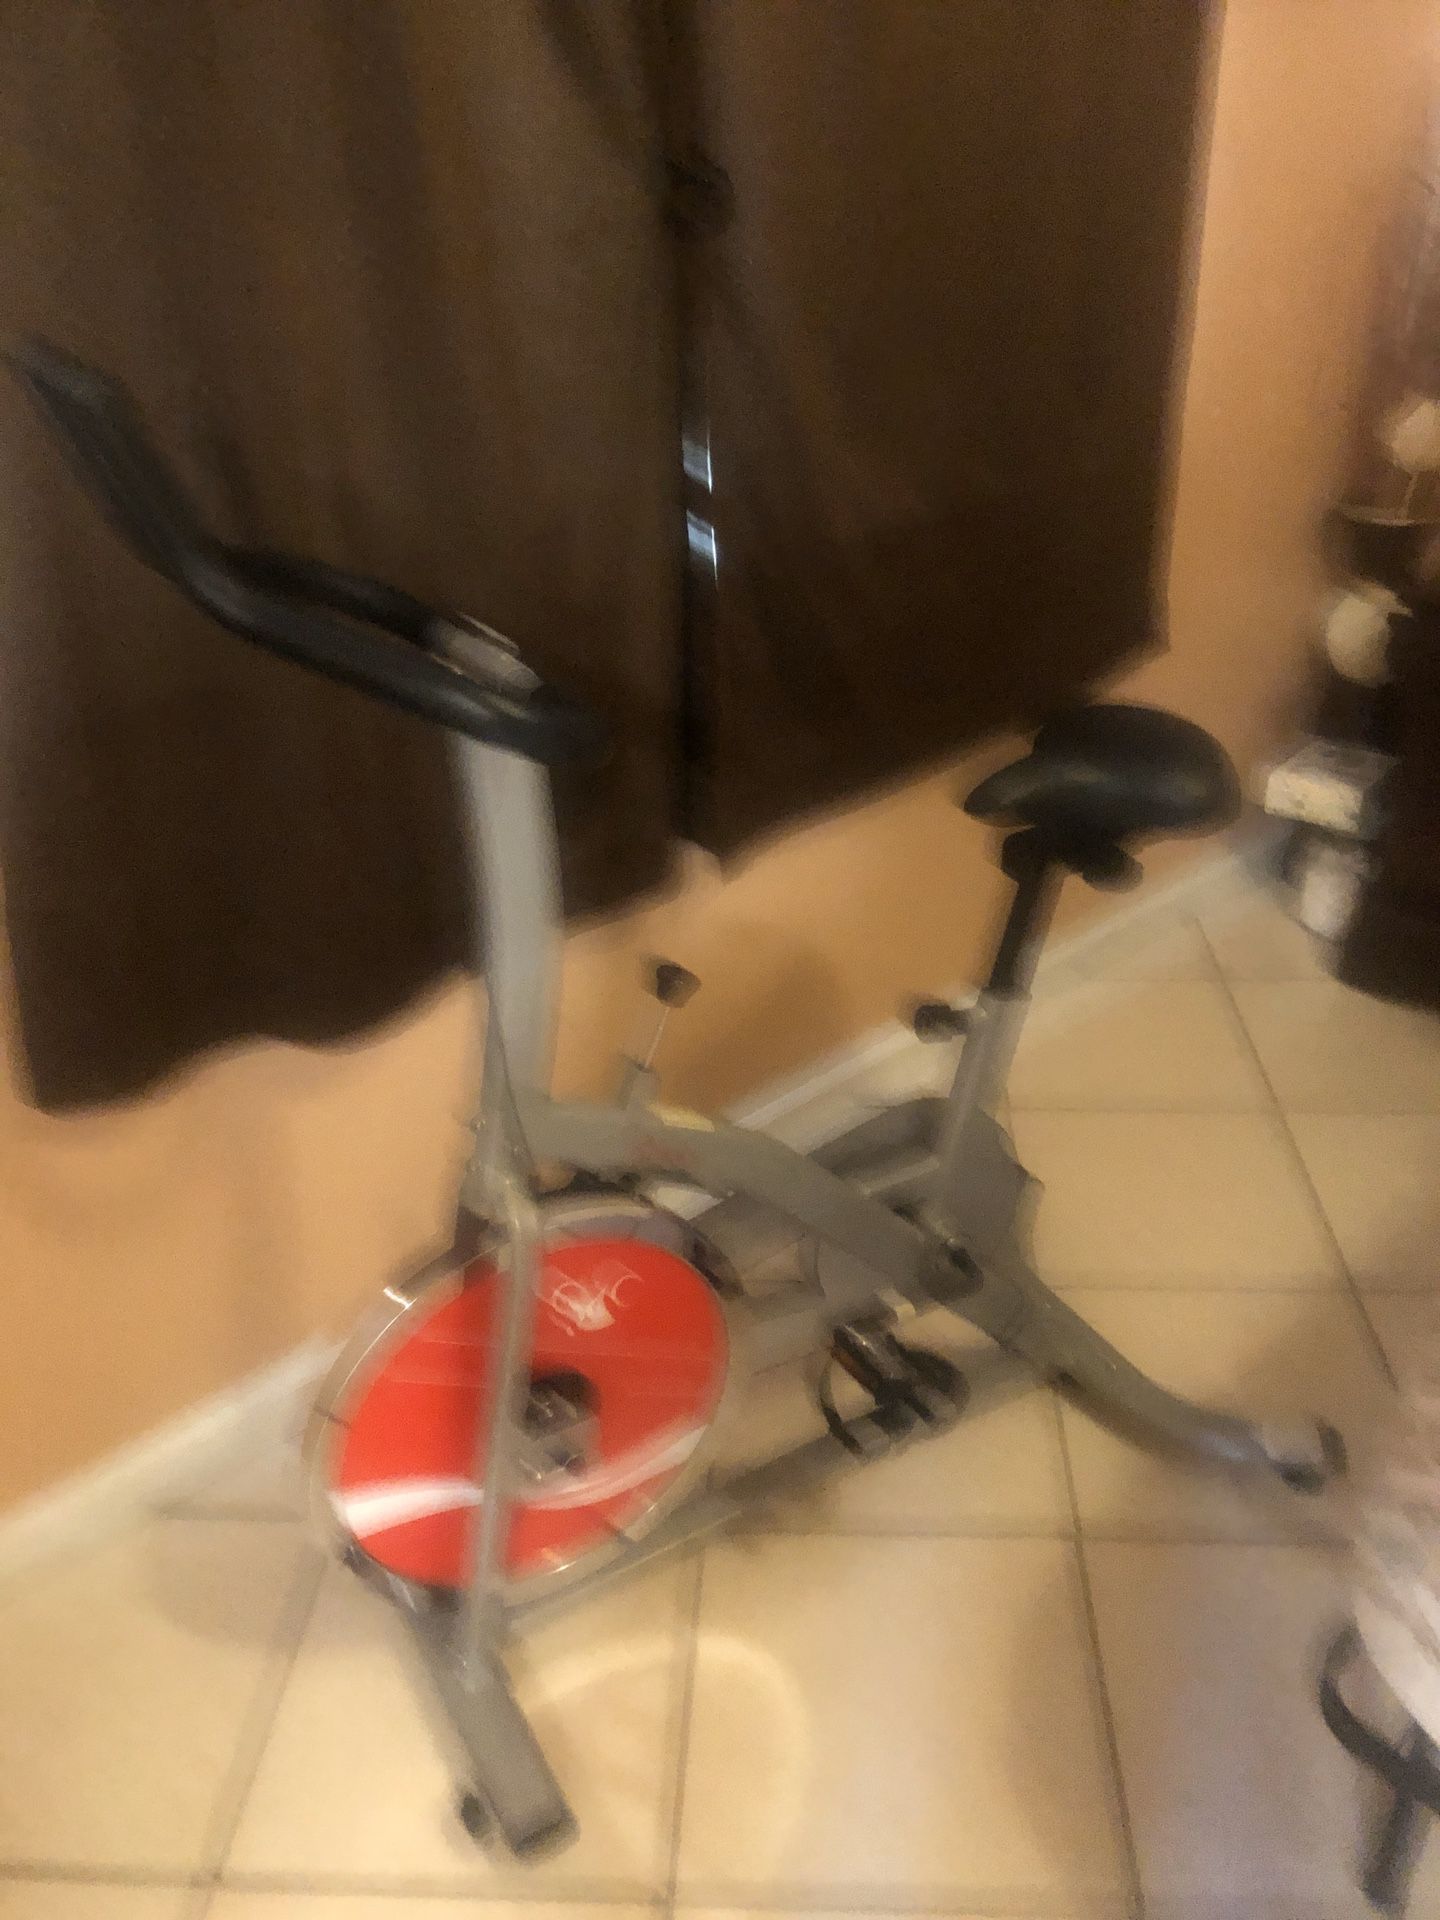 Spinning bike